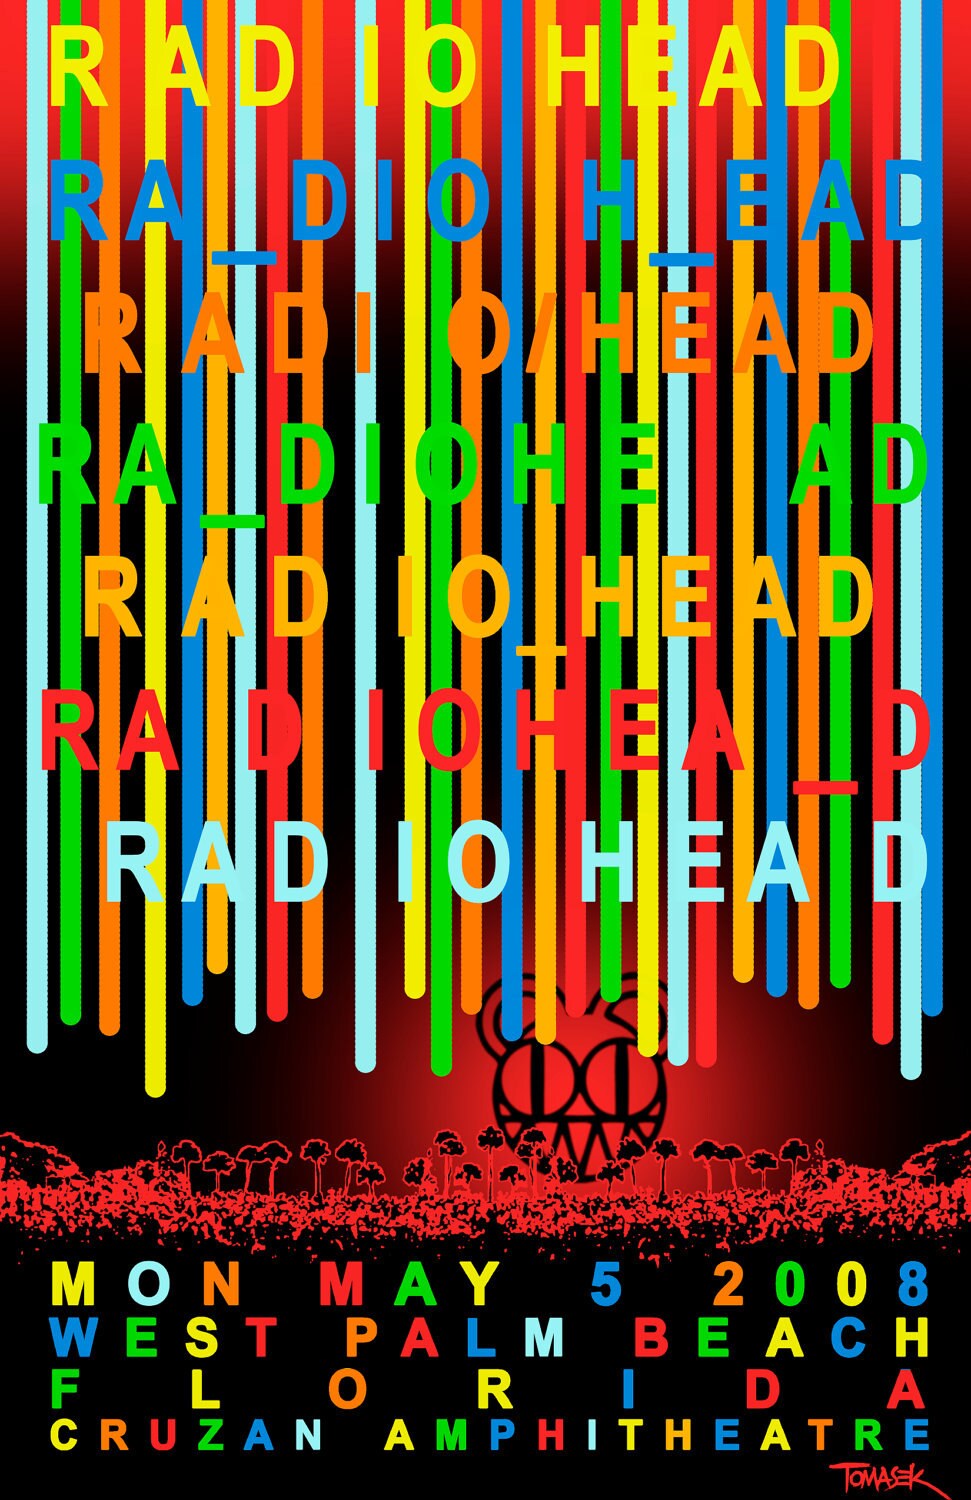 radiohead tour poster